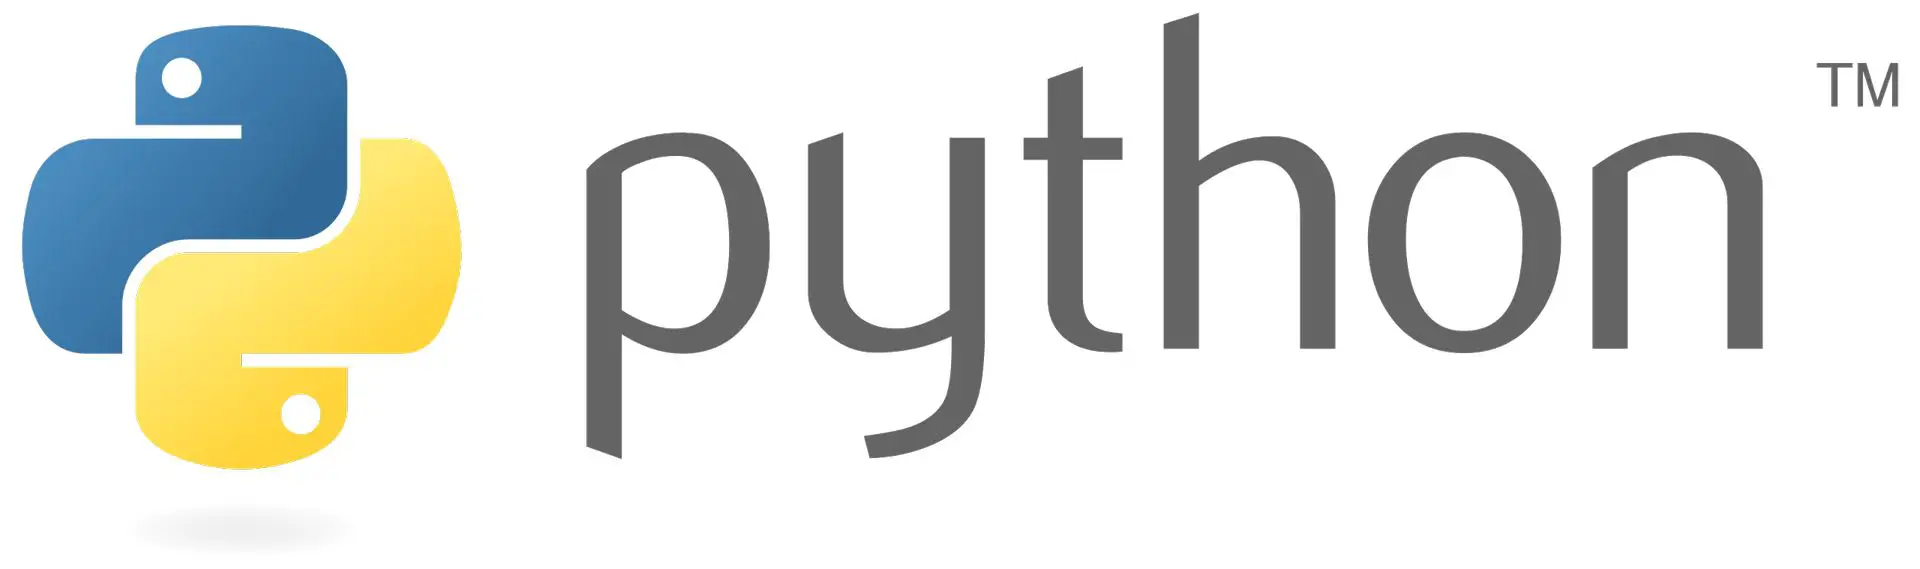 Microsoft'tan büyük adım: Python programlama dili Excel'e entegre ediliyor